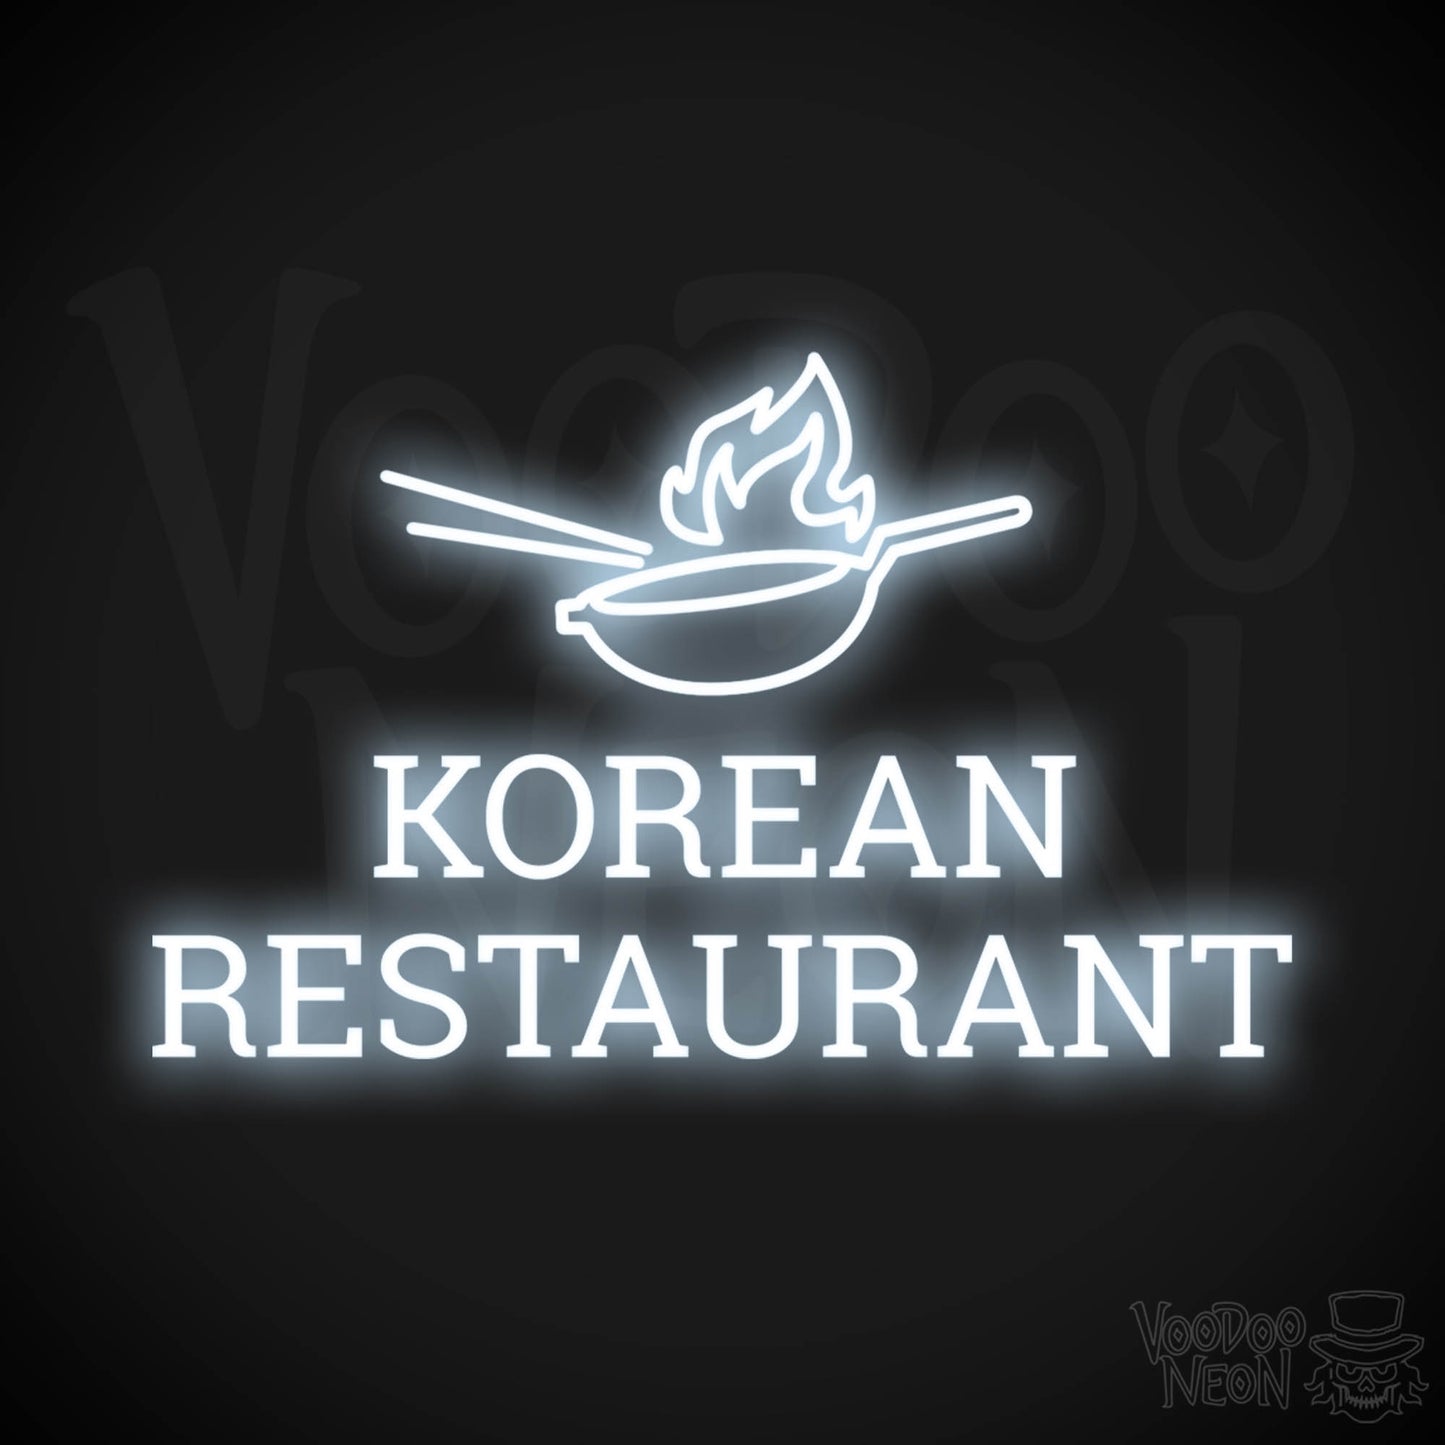 Korean Restaurant LED Neon - Cool White